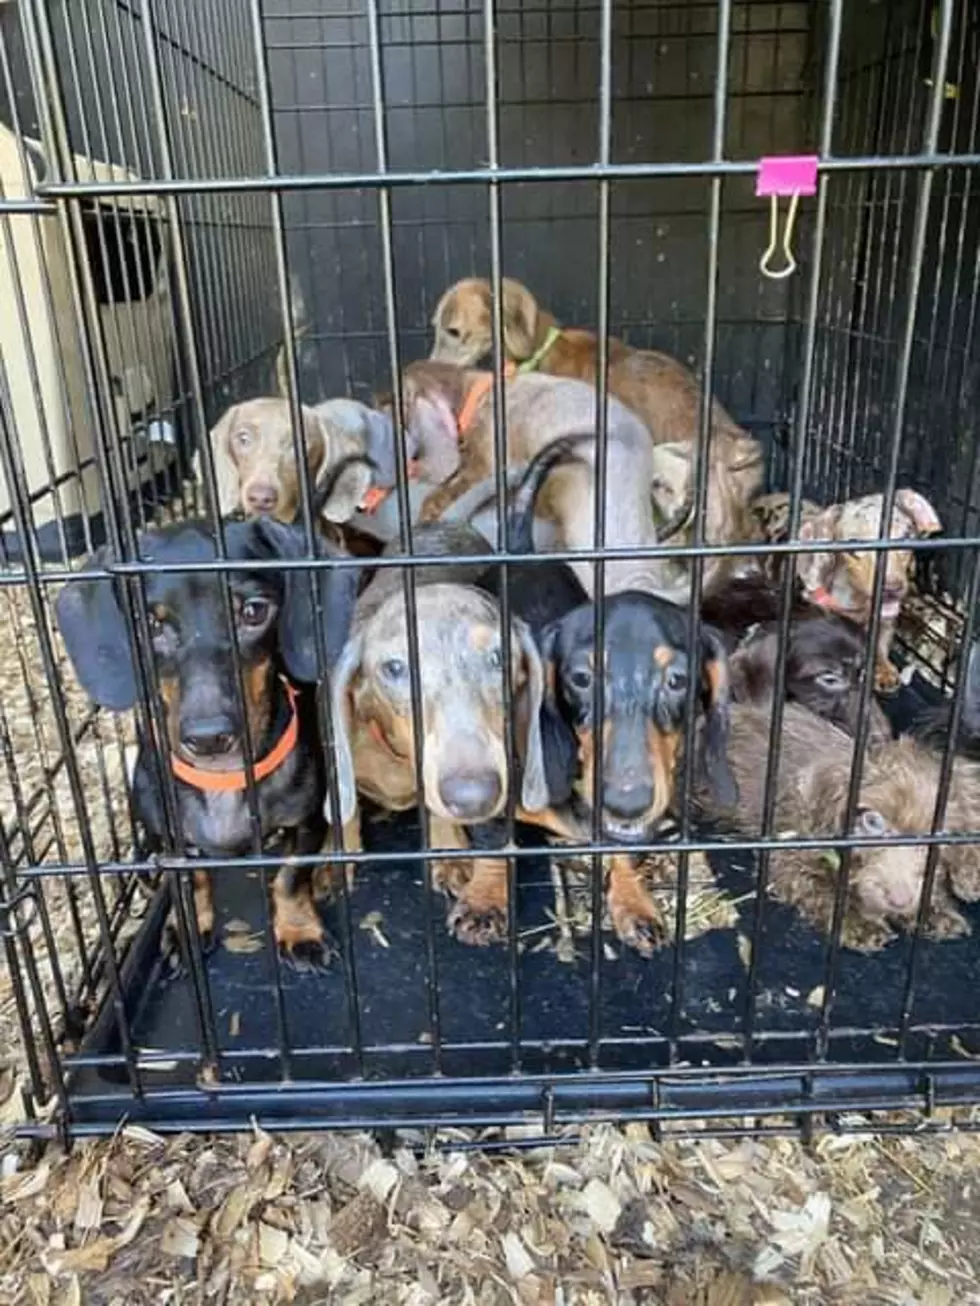 Michigan Dachsund Rescue Warns of Puppy Mills, Bad Breeders